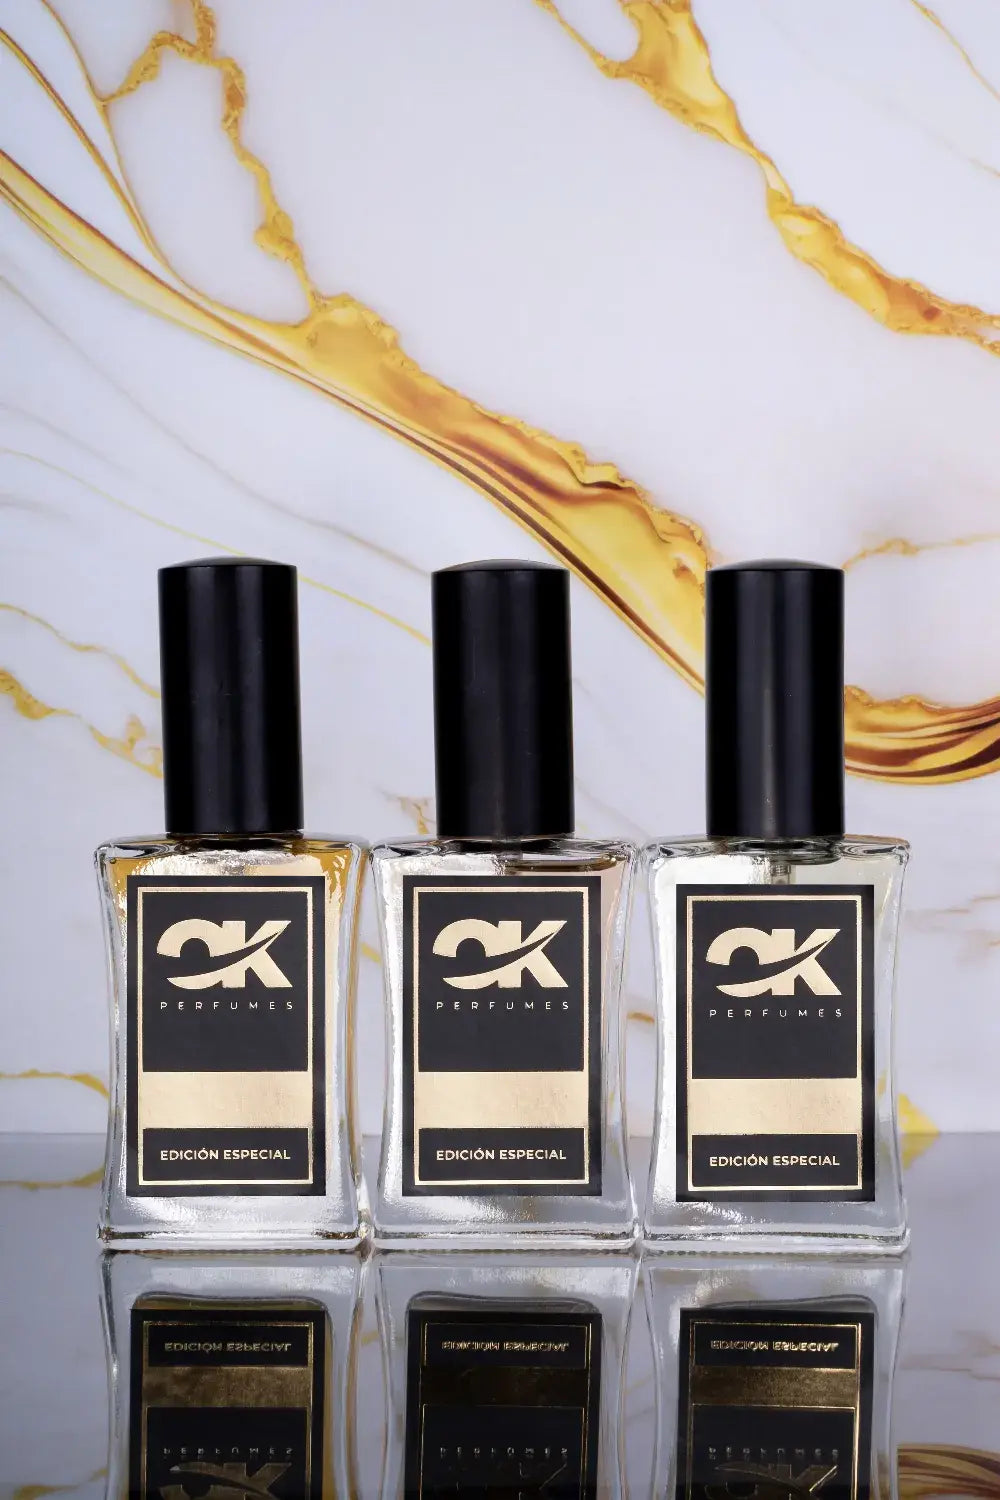 OK Perfumes: Equivalencia, Calidad y Durabilidad Asequible